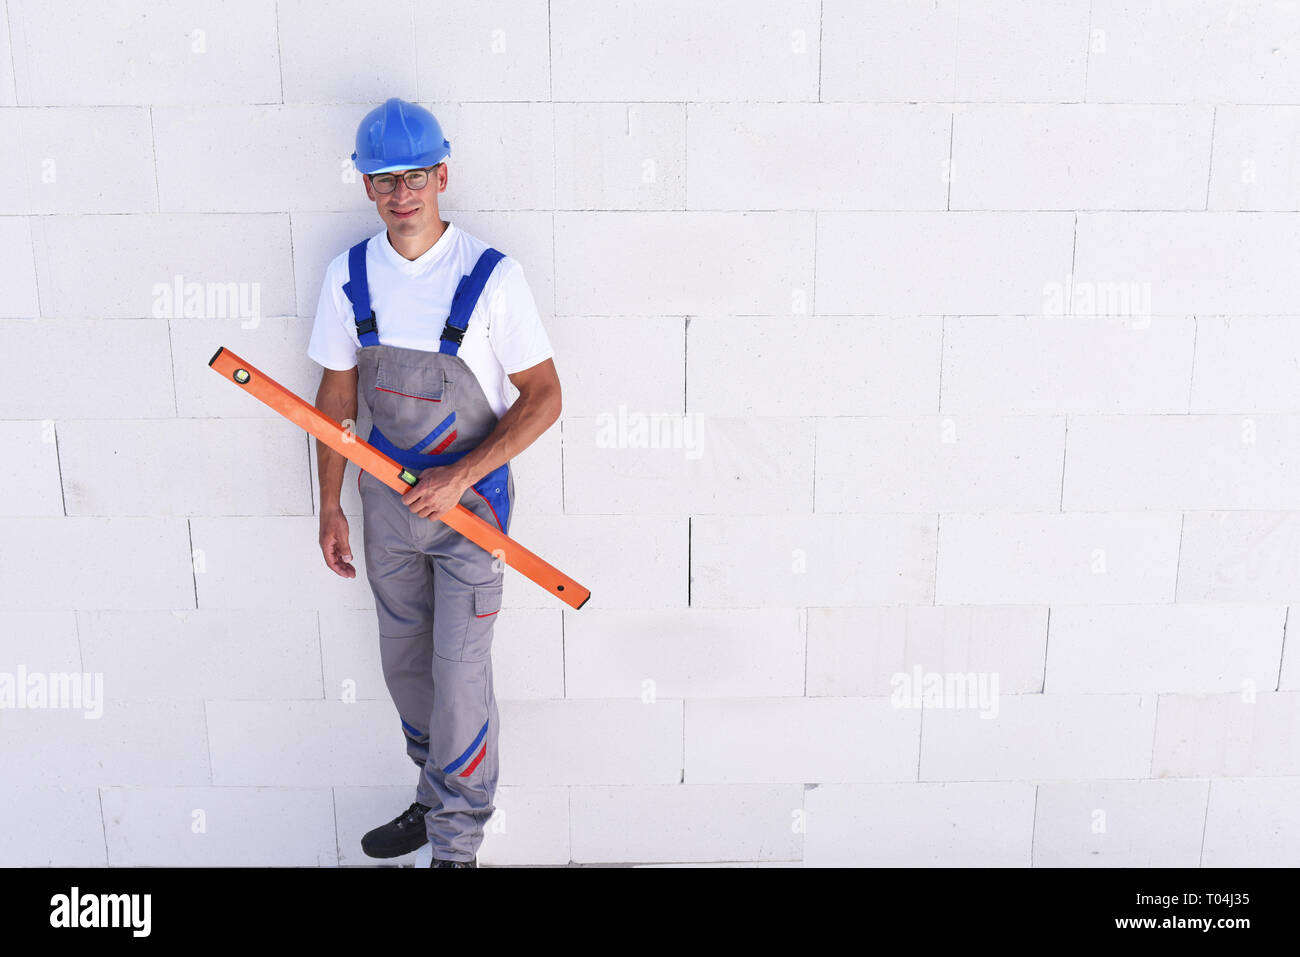 Beruf Bauarbeiter - Arbeiten auf der Baustelle der Bau eines Wohnhauses Stockfoto